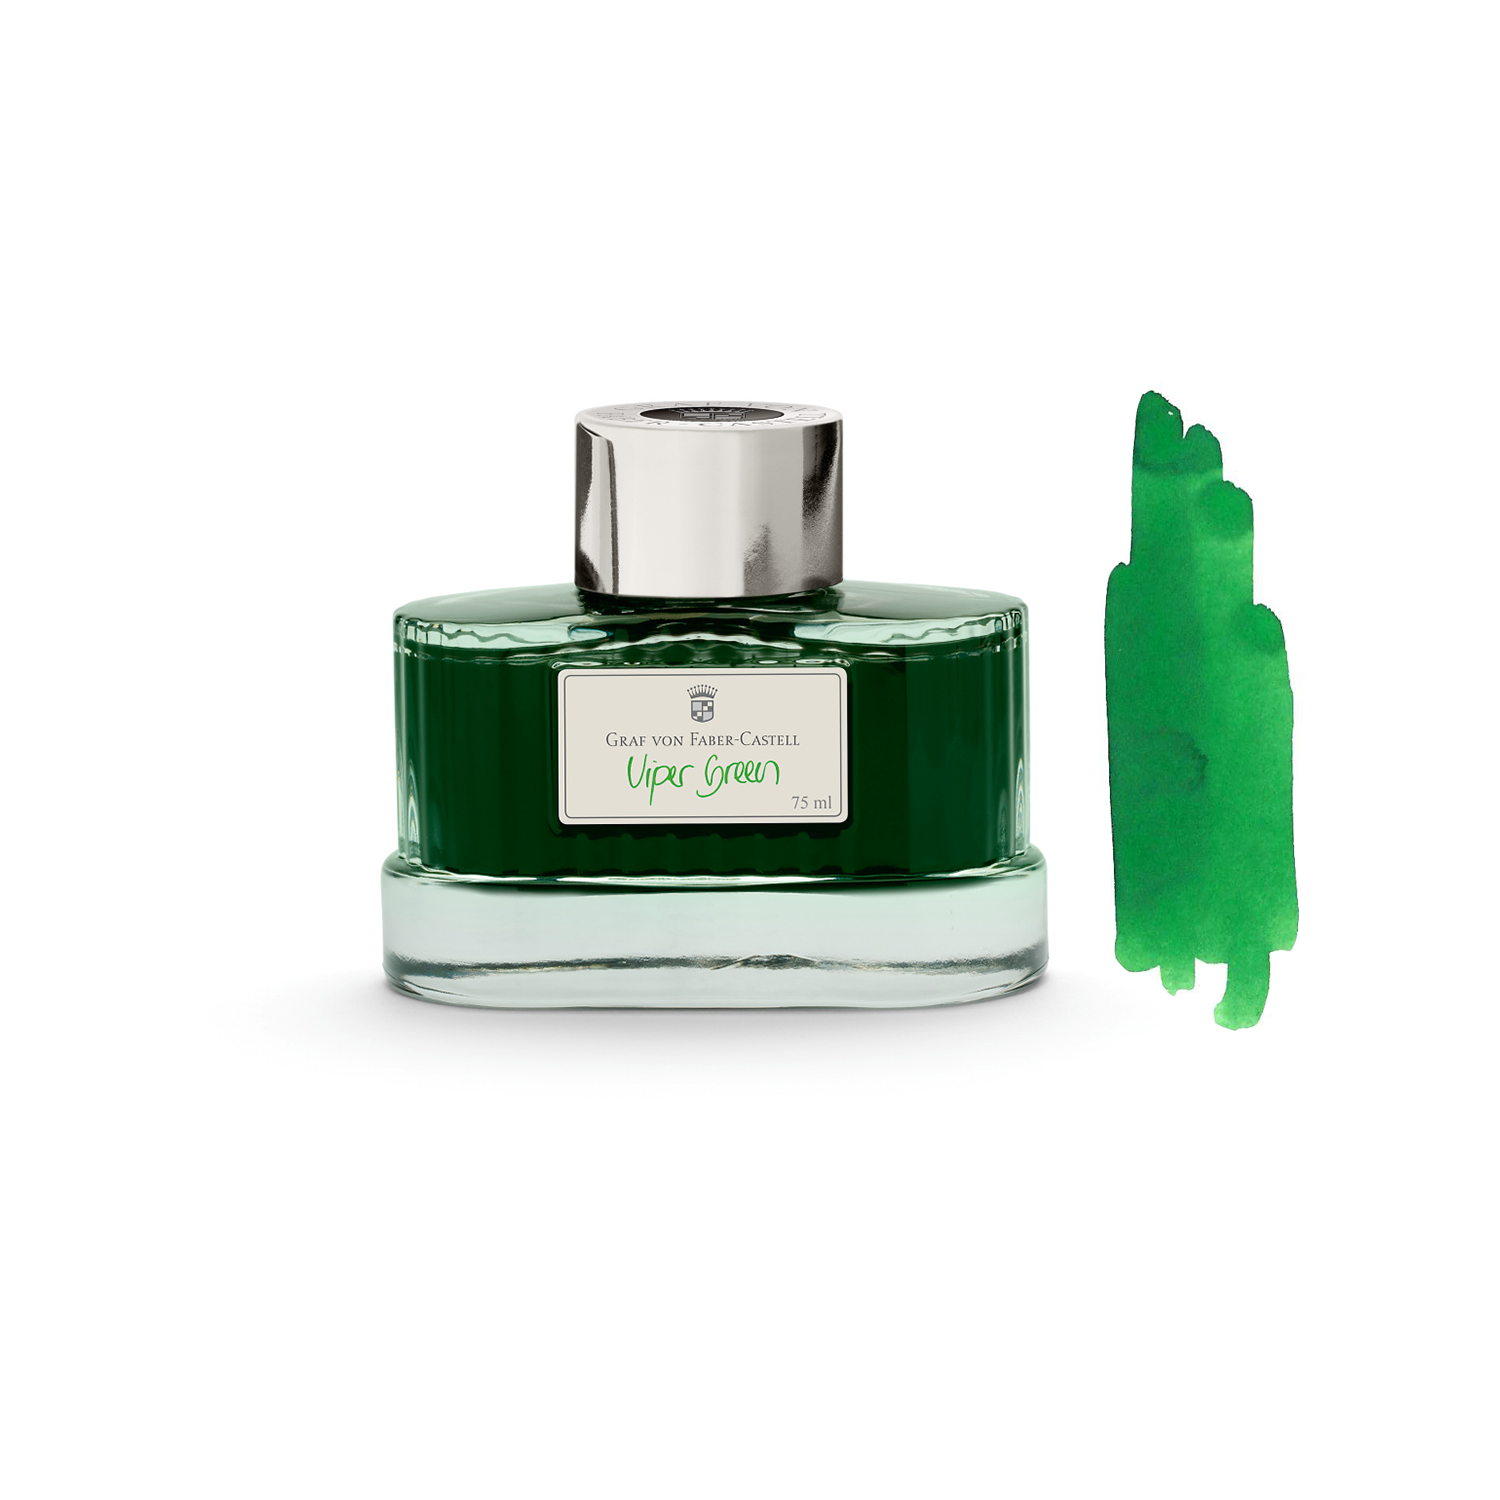 Viper Green * Graf von Faber-Castell ink pot